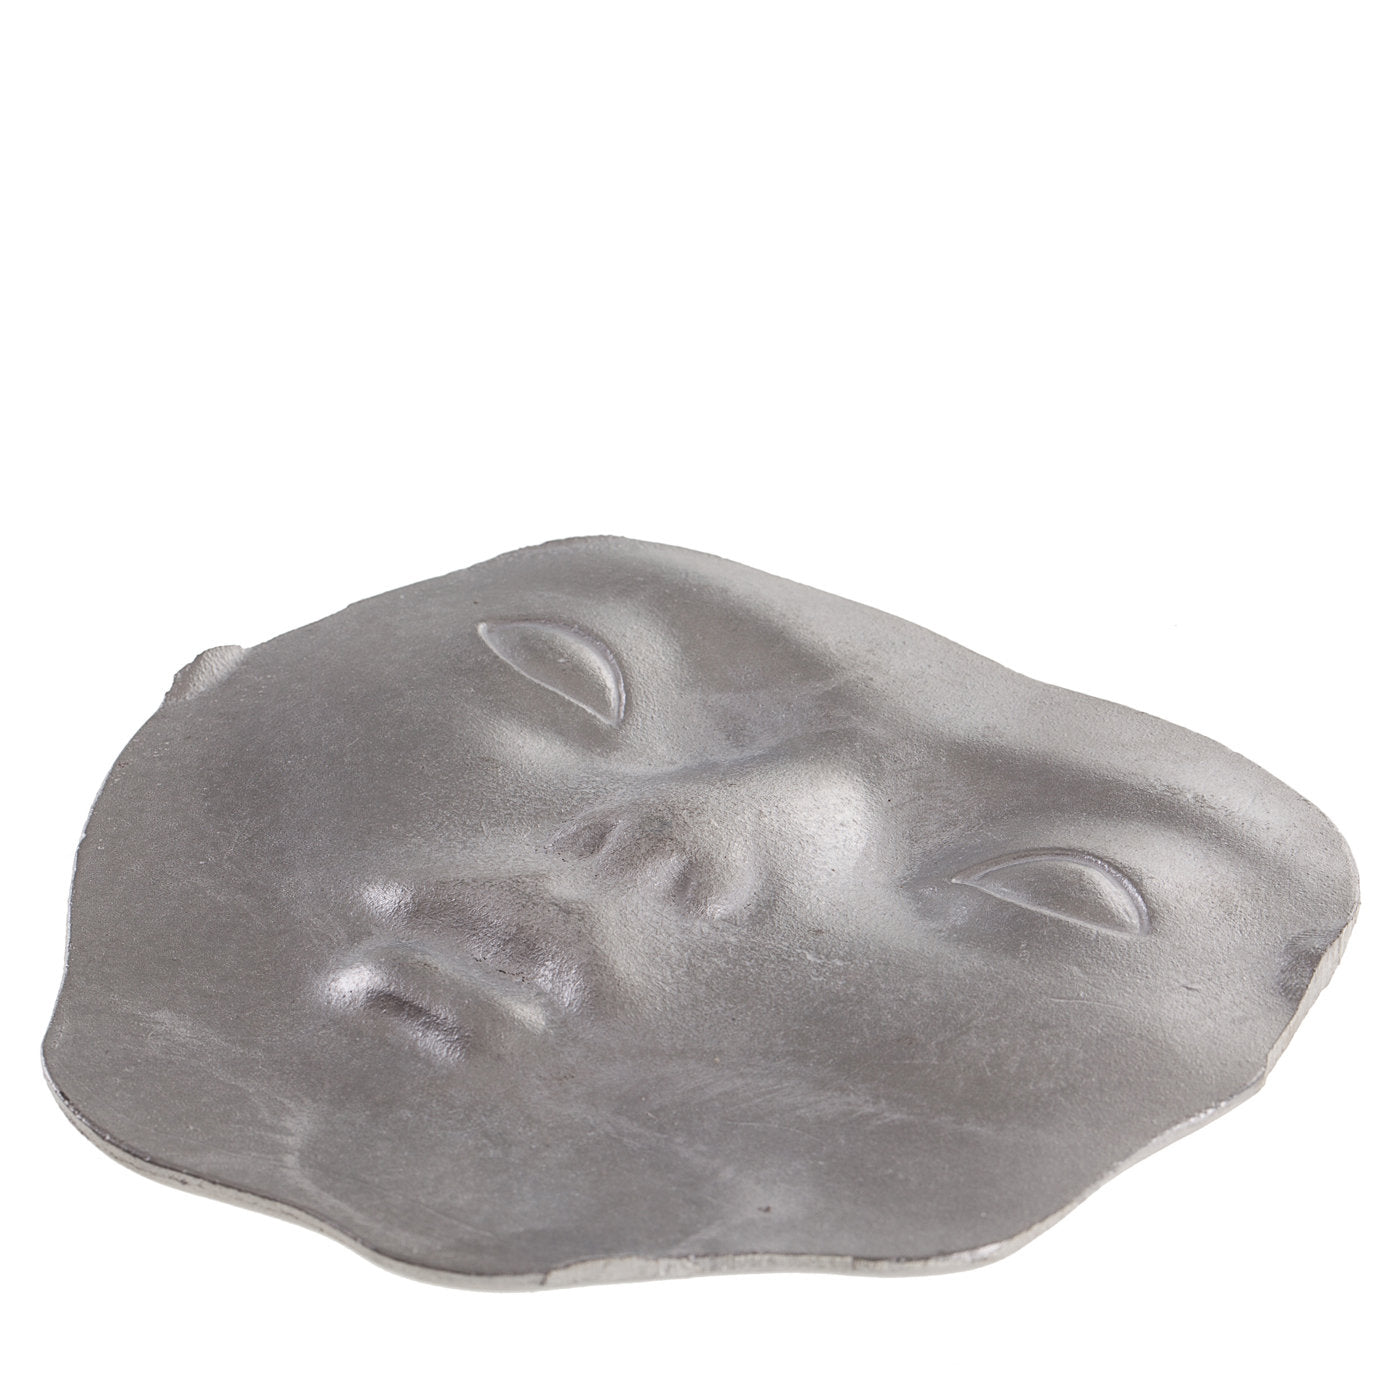 Sculpture de fragments de visage humain - Vue alternative 1